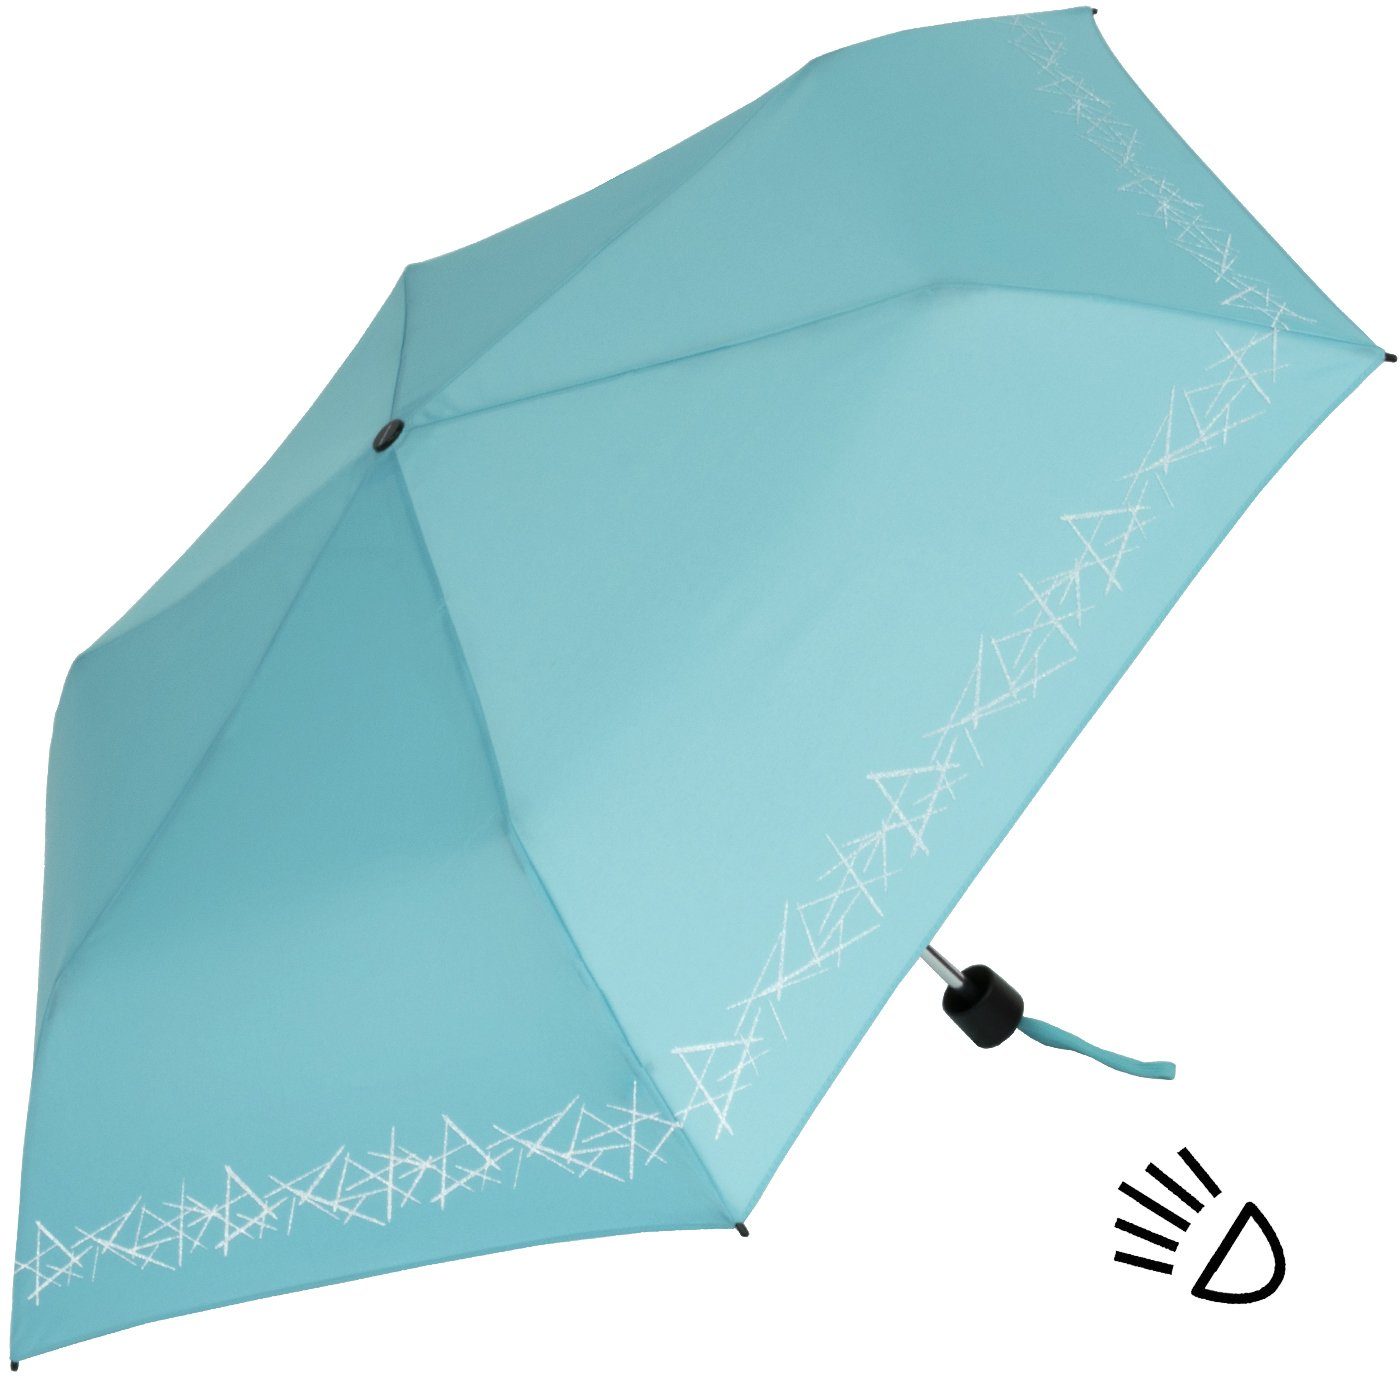 Schulweg, reflective auf capri Sicherheit Reflexborte, Taschenregenschirm hellblau Kinderschirm Knirps® 4Kids leicht, uni, mit dem